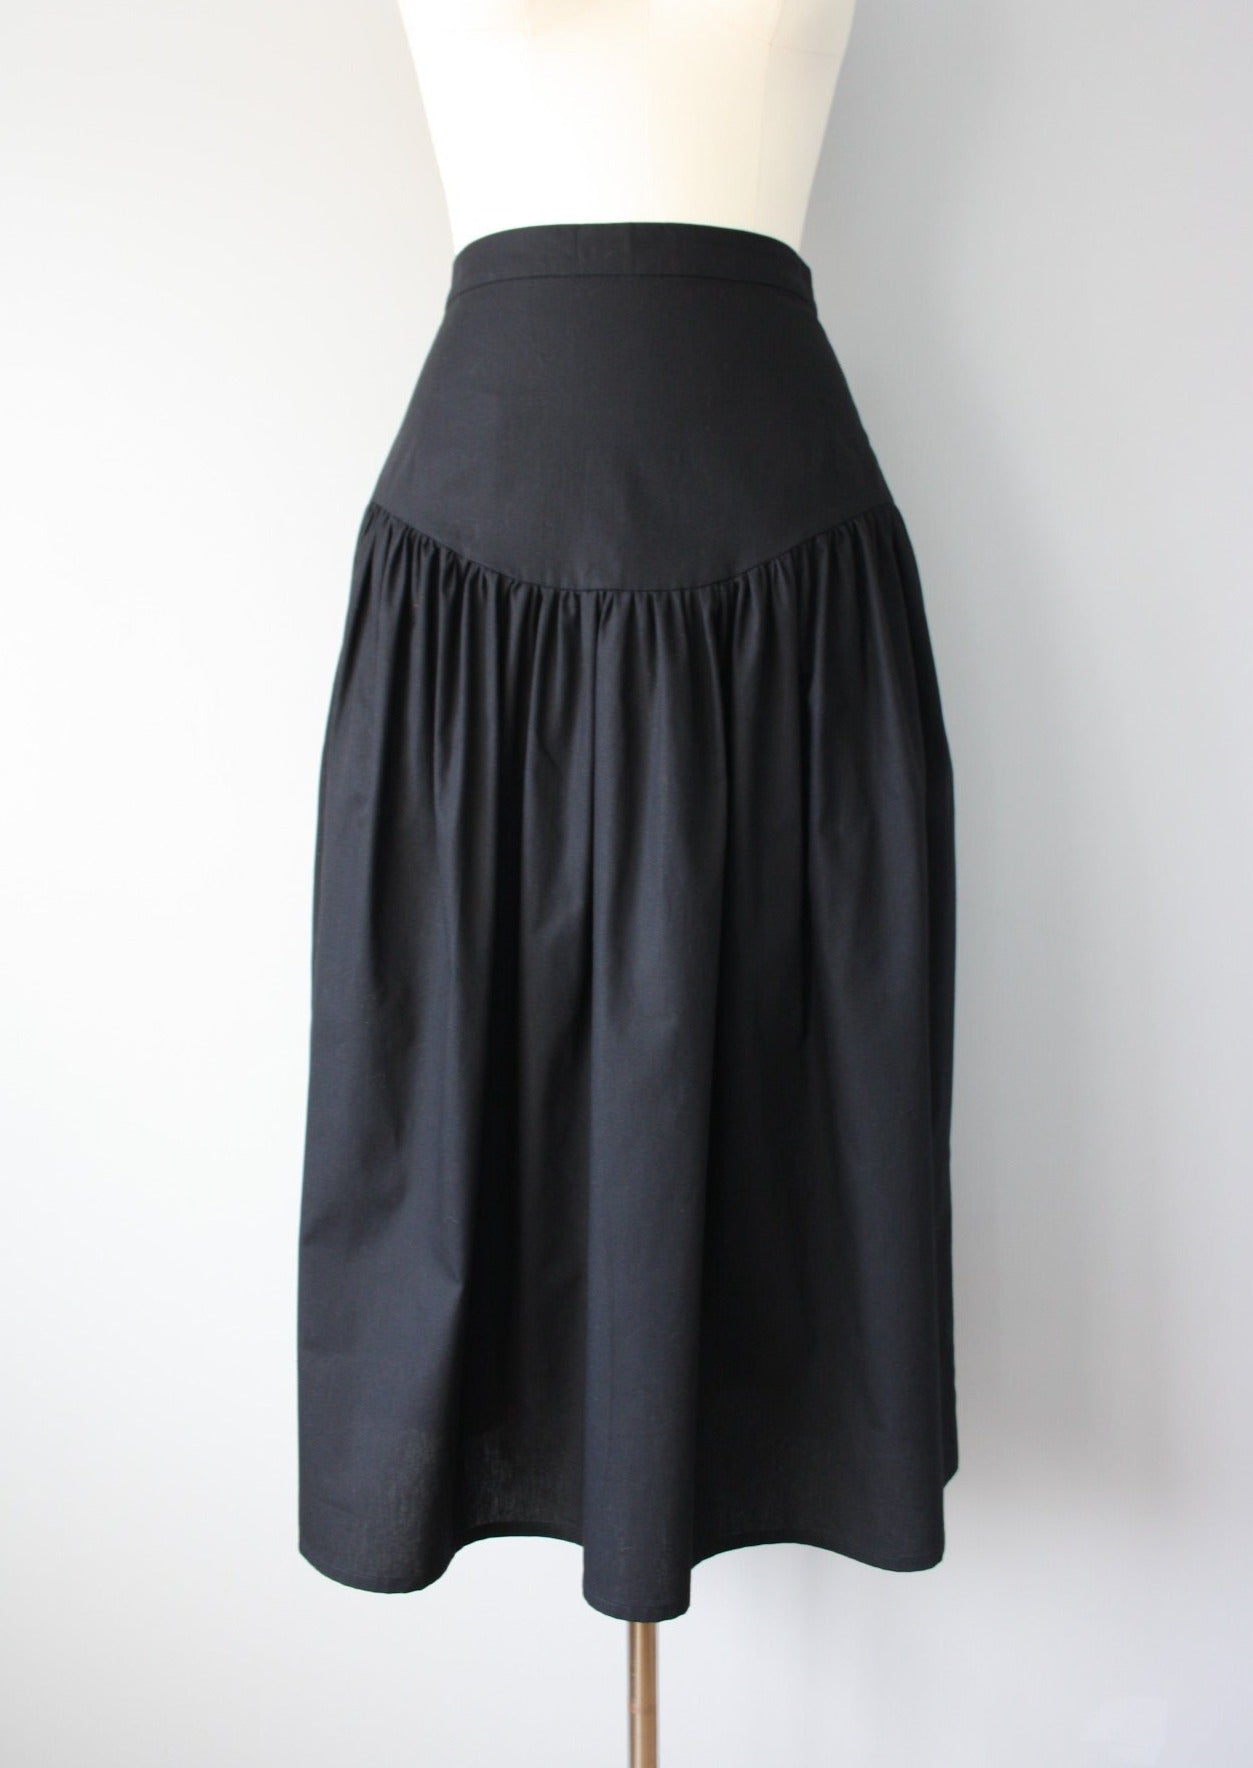 Sage Skirt - additional colour